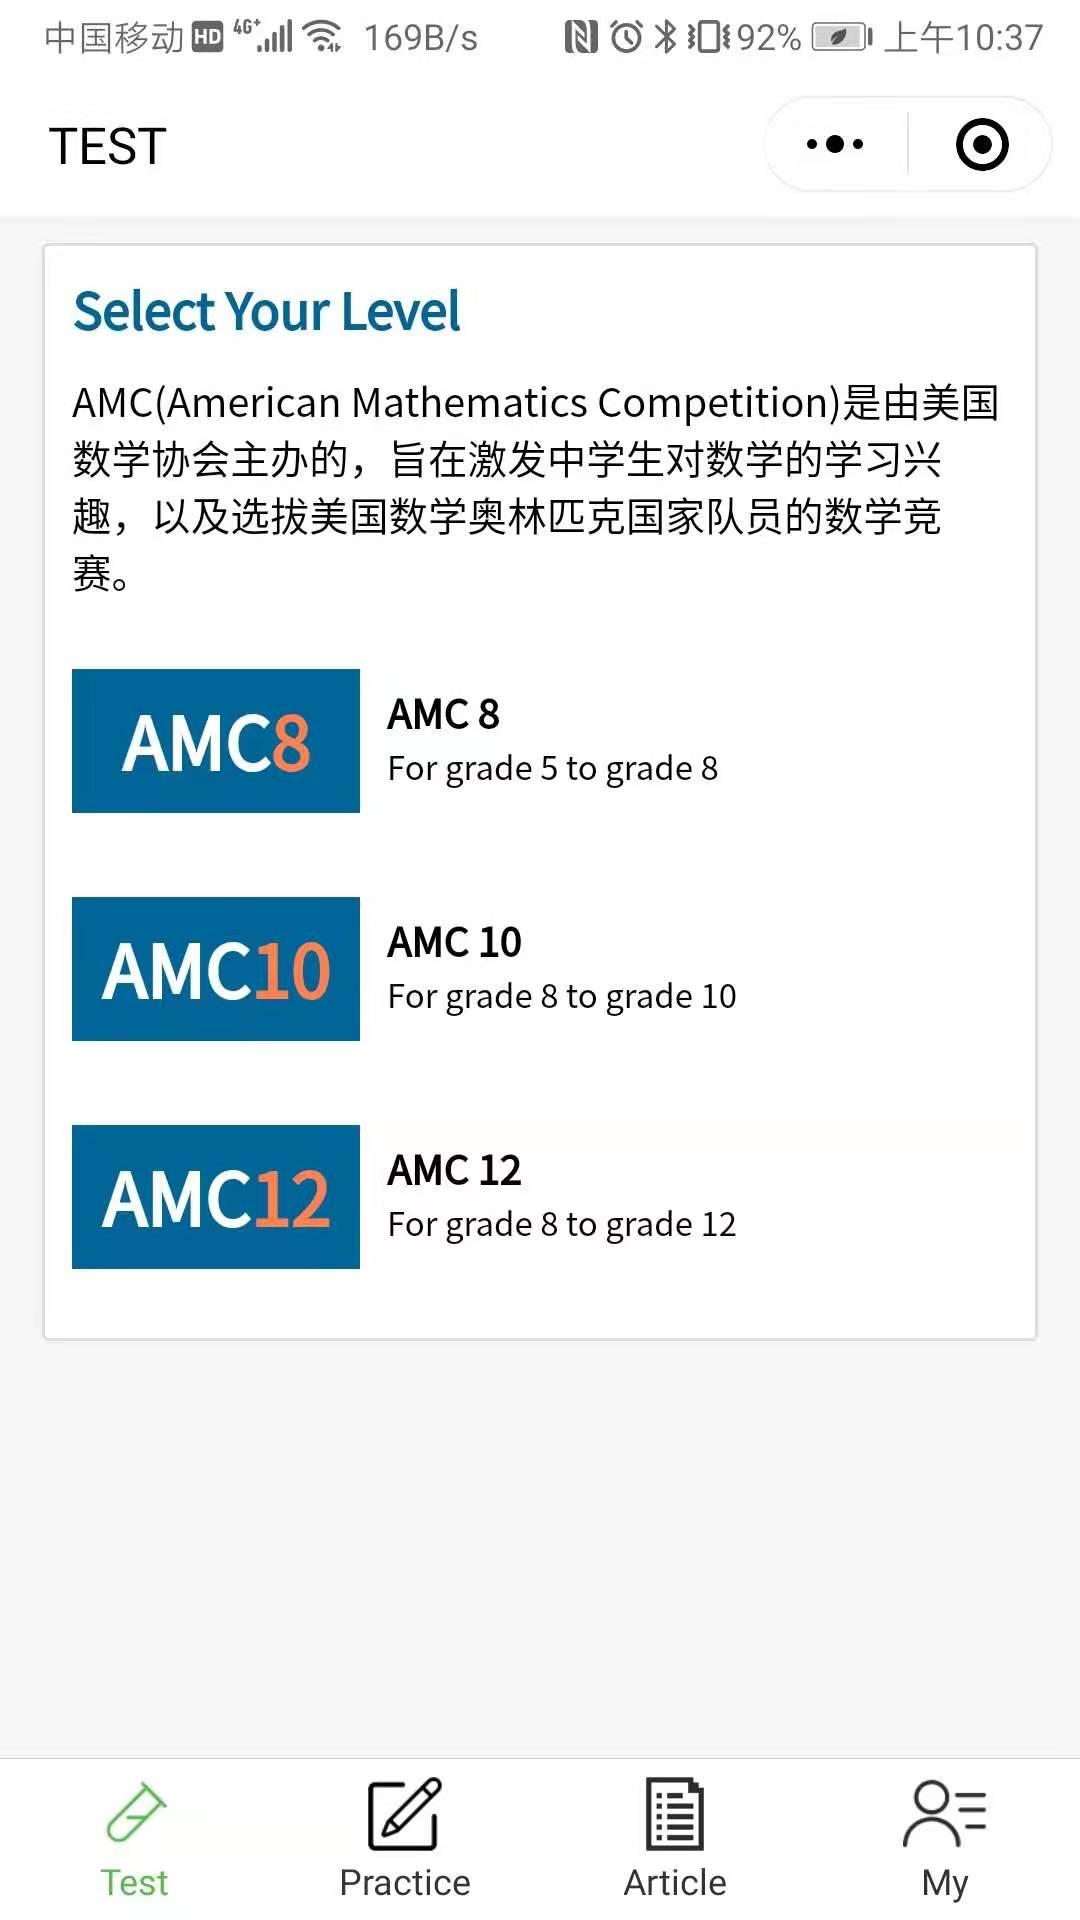 AMC测评练习小助手_AMC测评练习小助手小程序_AMC测评练习小助手微信小程序